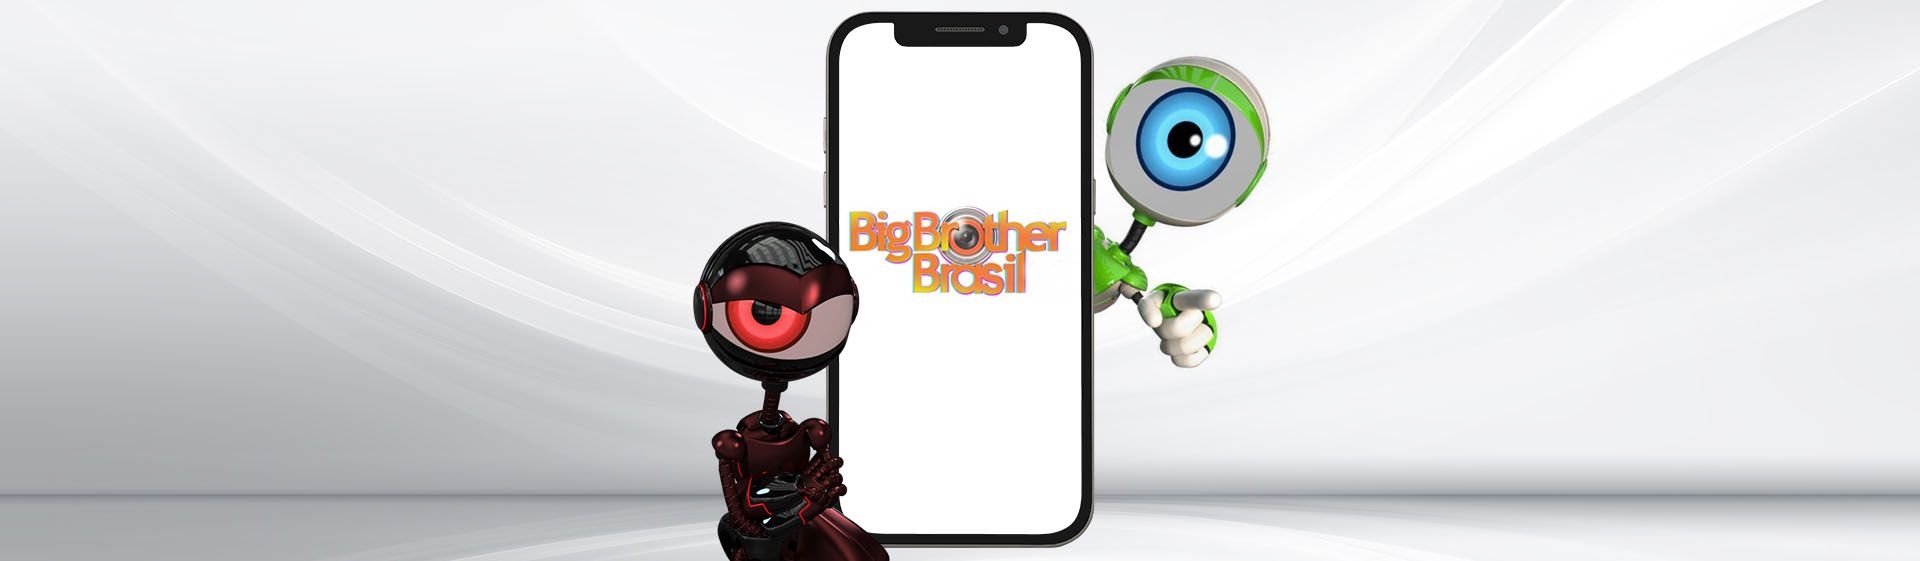 Robôzinhos do BBB ao lado de celular com logo do Big Brother Brasil na tela. Fundo da imagem é cinza